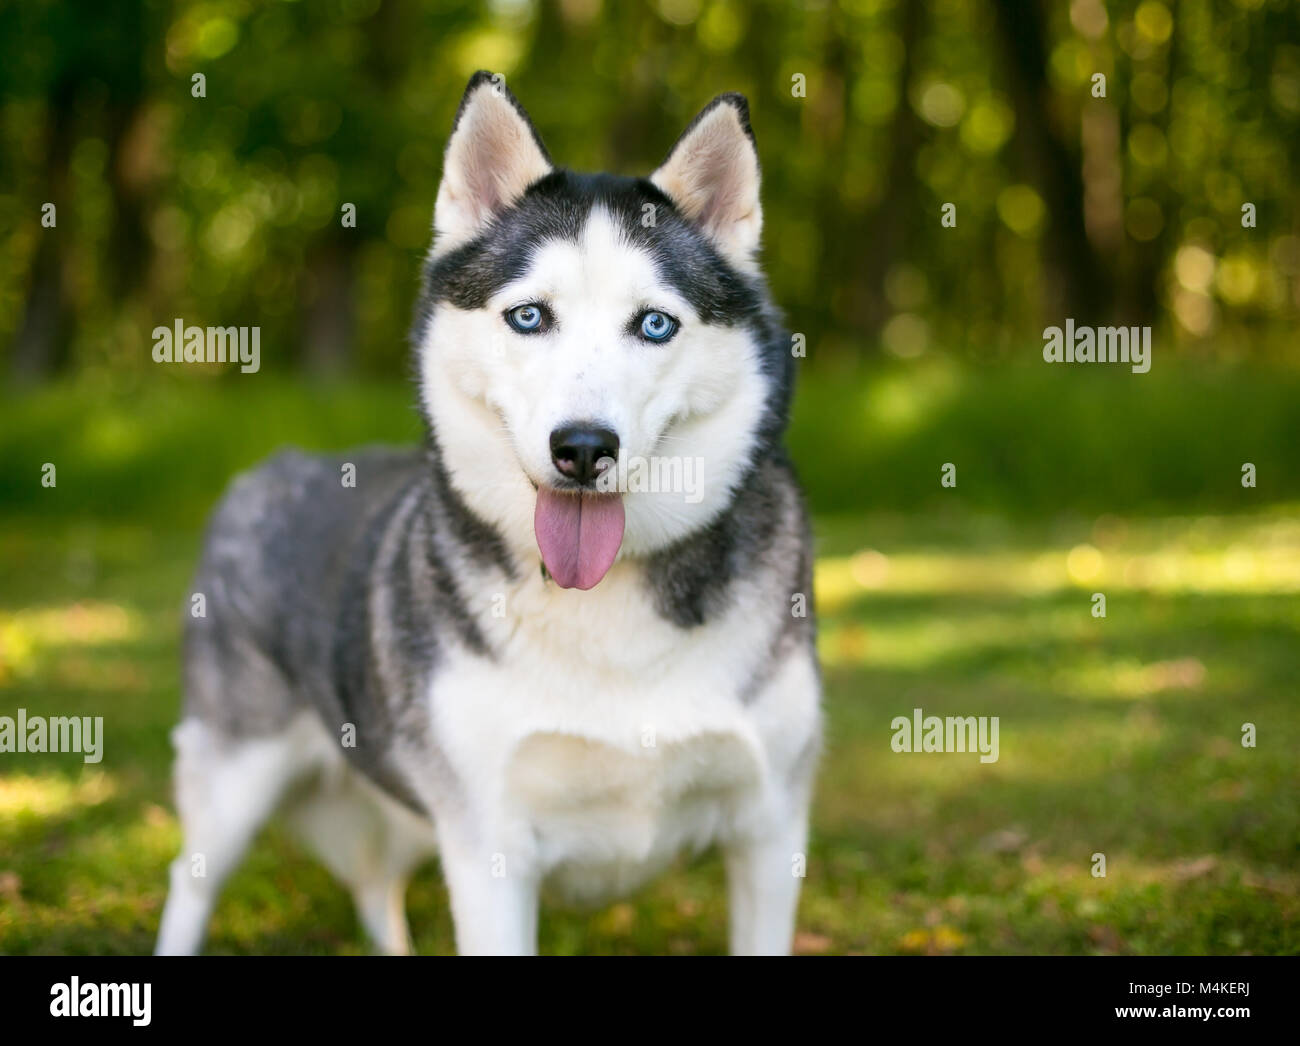 An Alaskan Husky dog outdoors Stock Photo